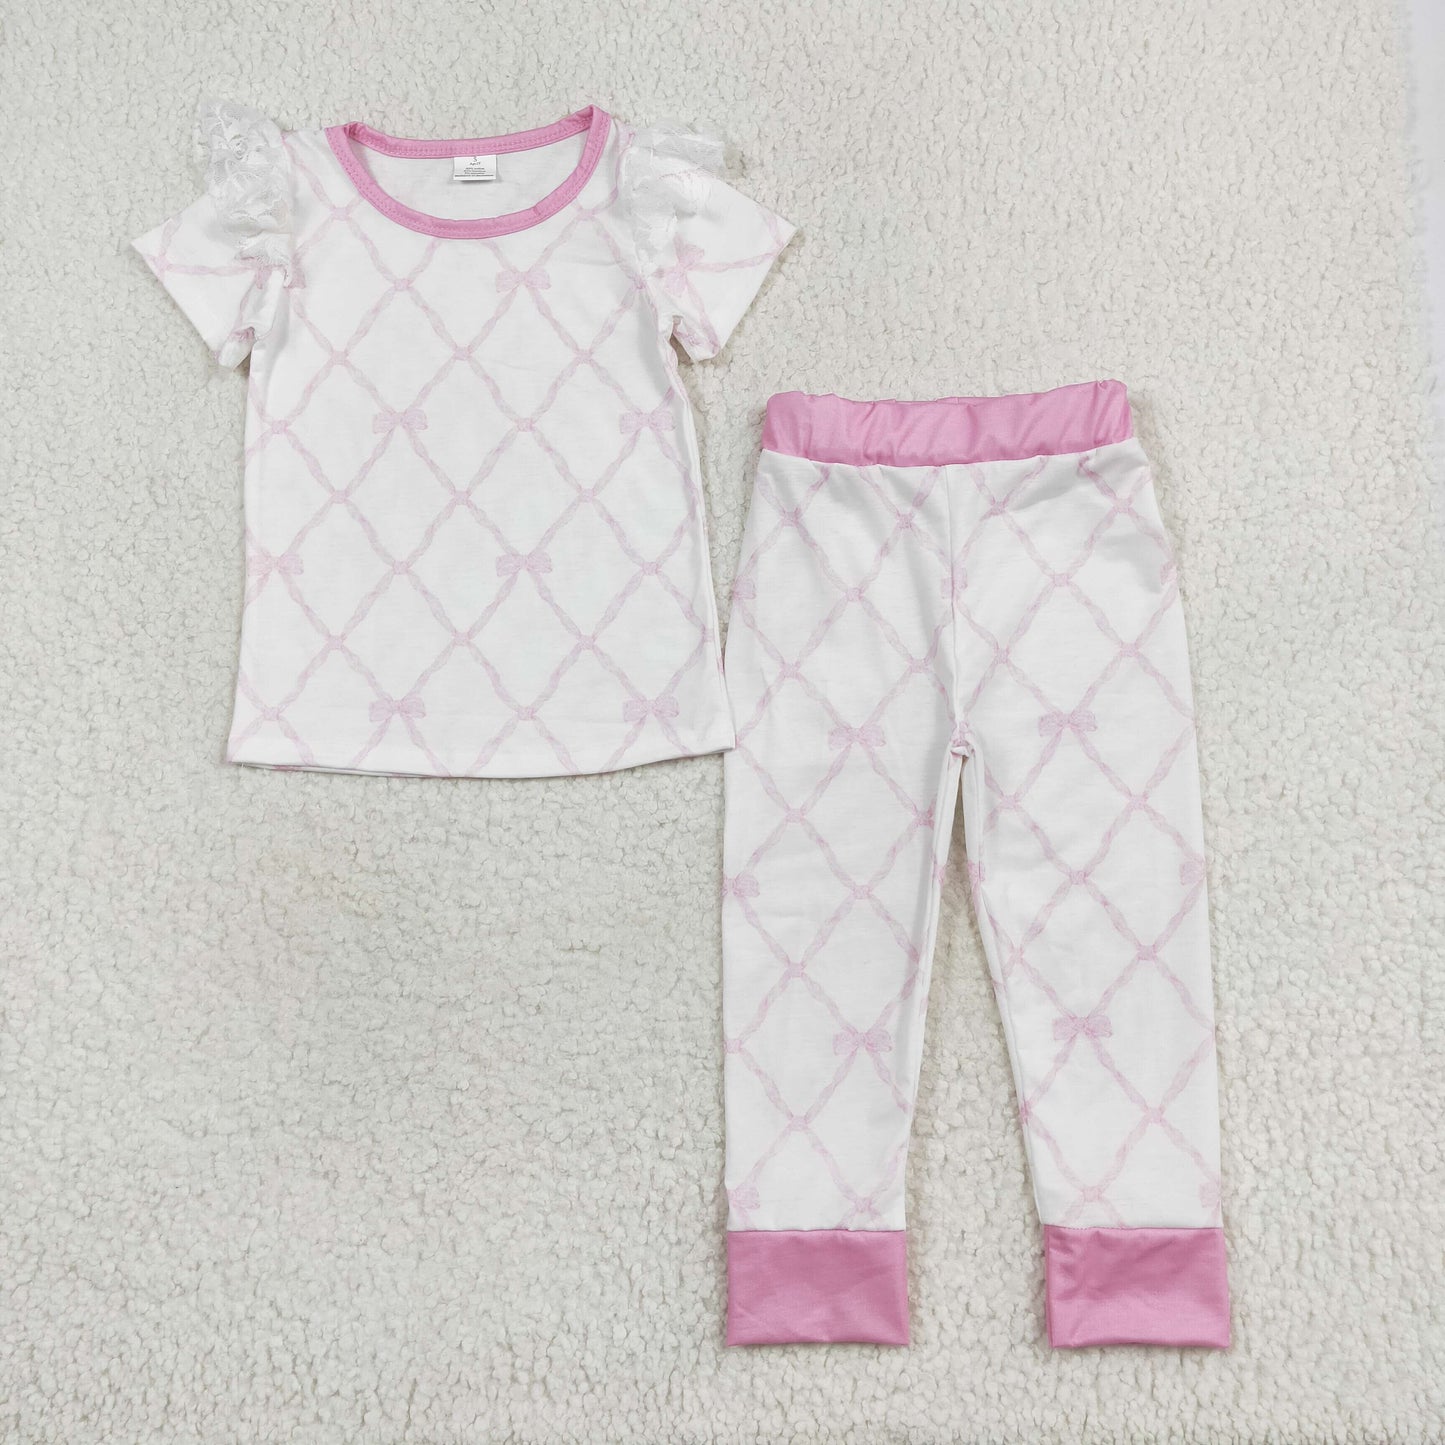 pink bows sibling clothes RTS